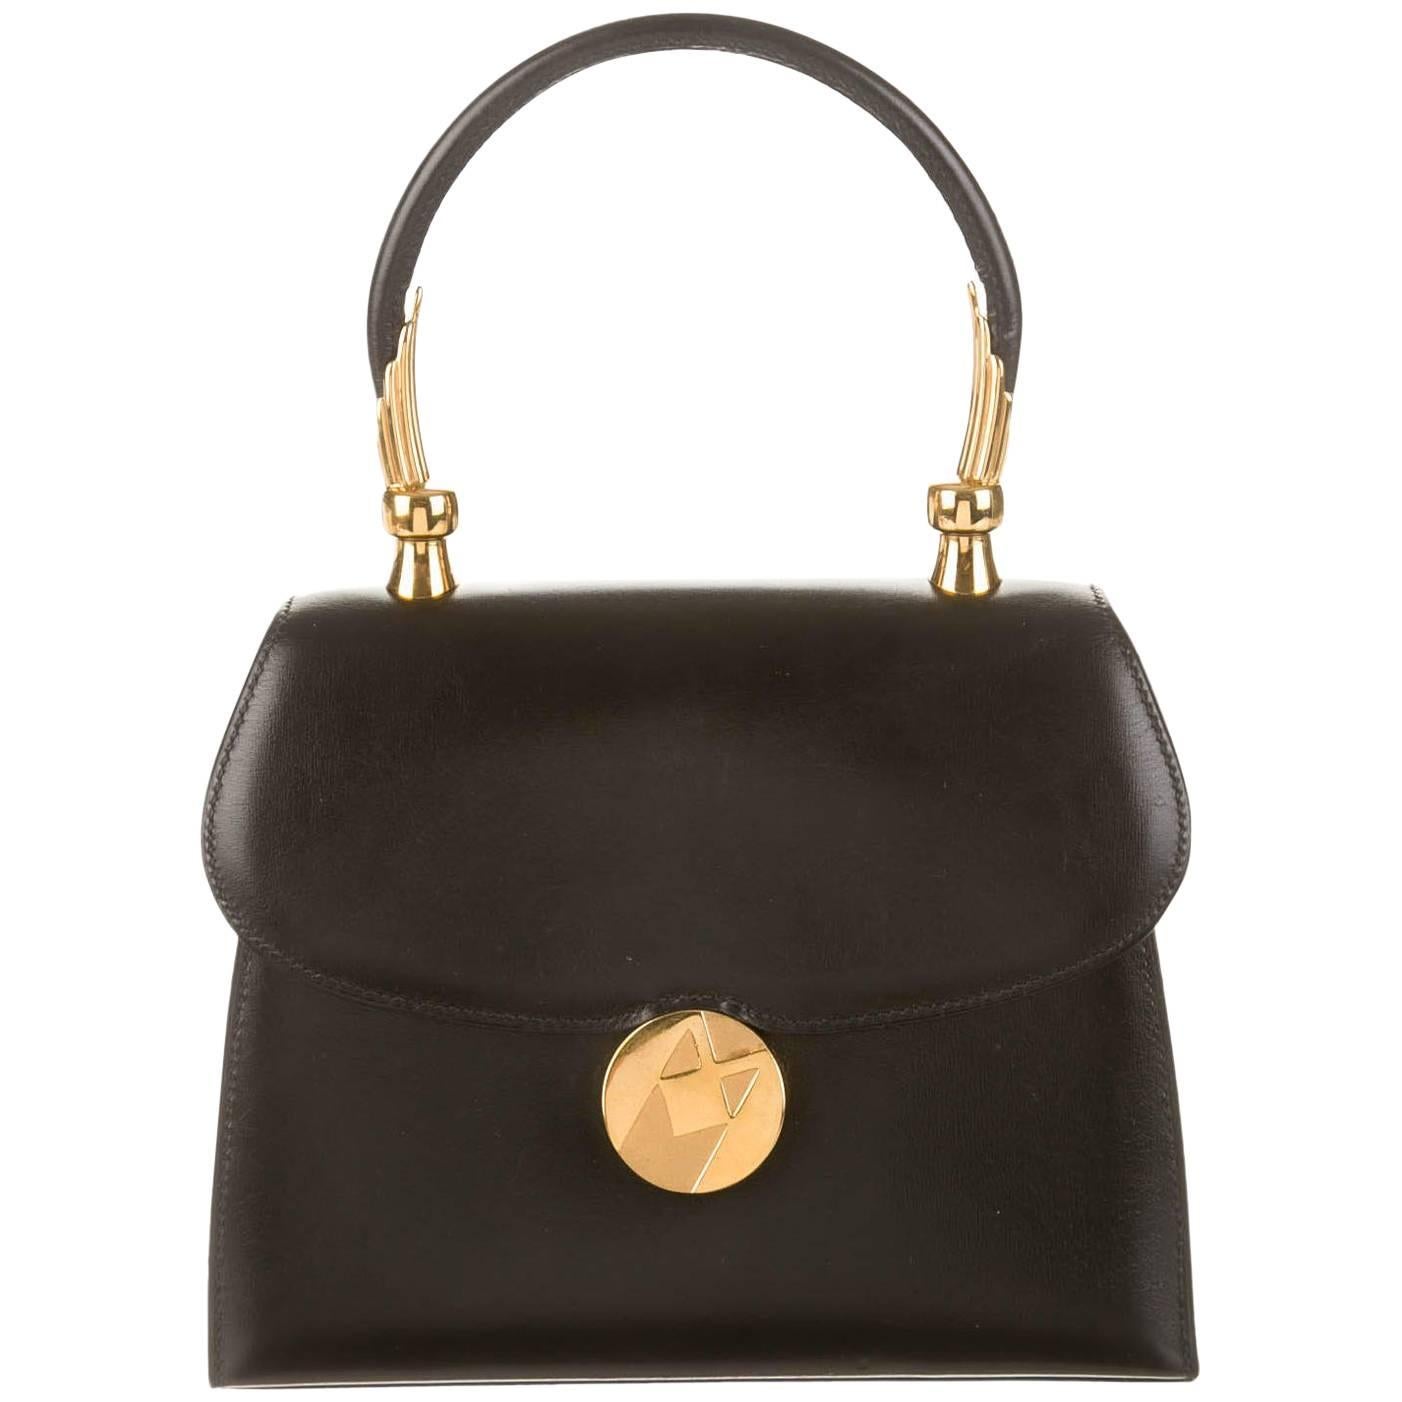 Hermes Black Leather Gold Emblem Kelly Top Handle Satchel Bag